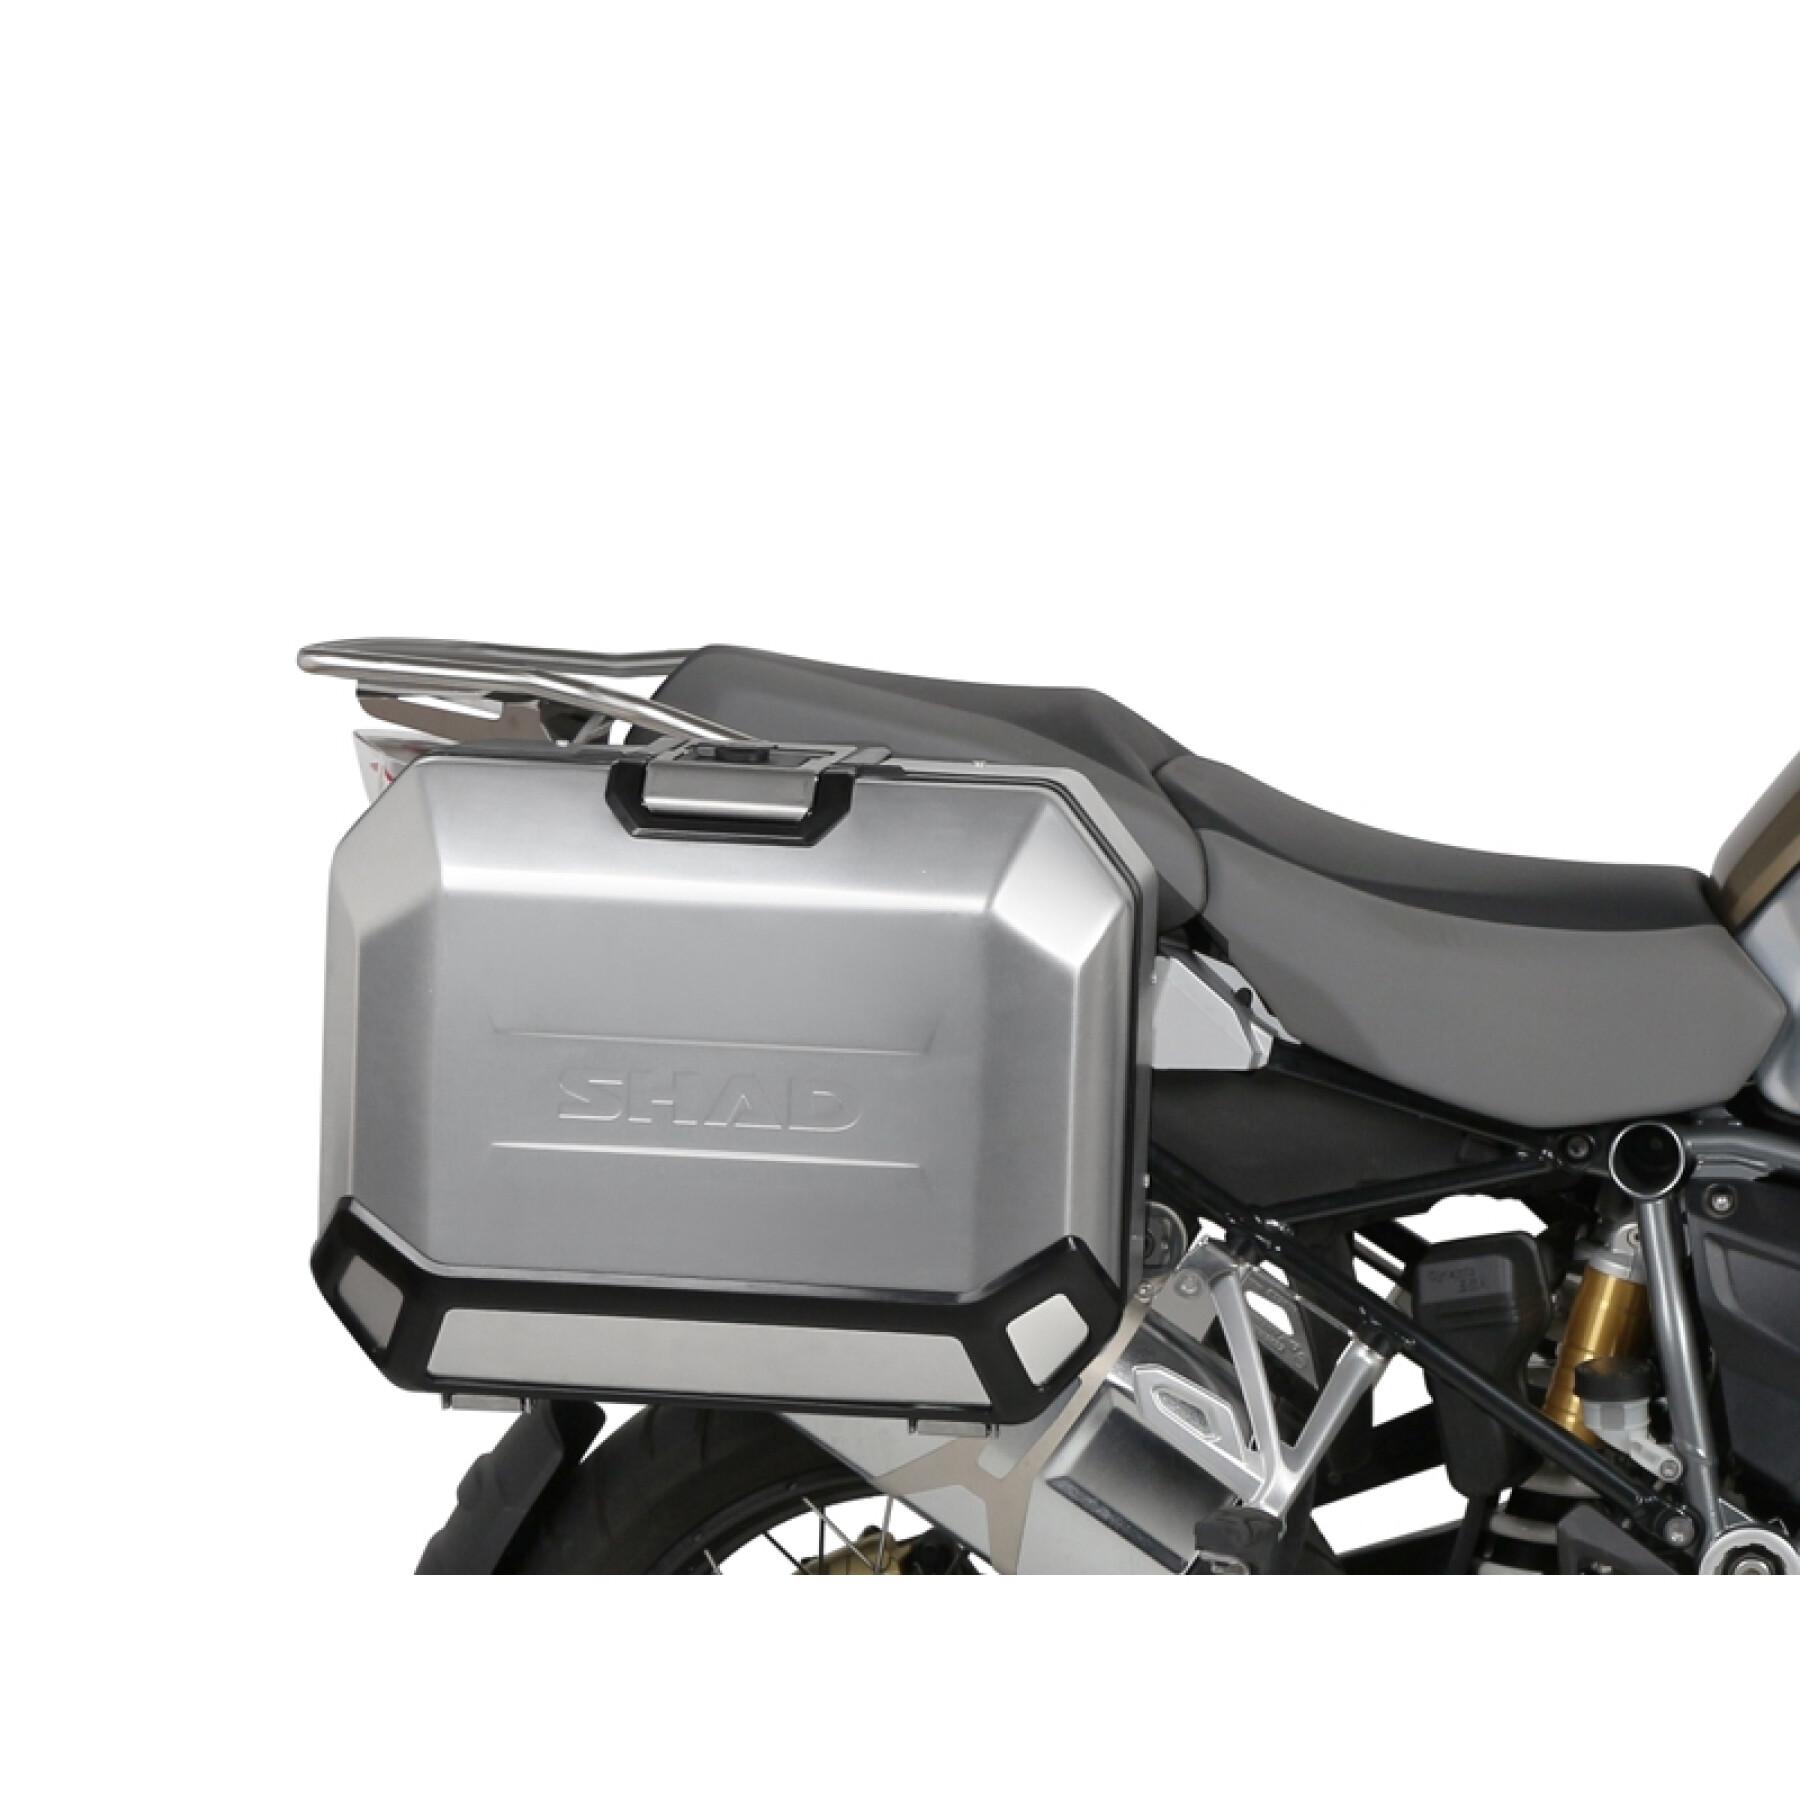 Sidostöd för motorcykel Shad 4P System Bmw R1200/R1250Gs Adventure 2013-2020